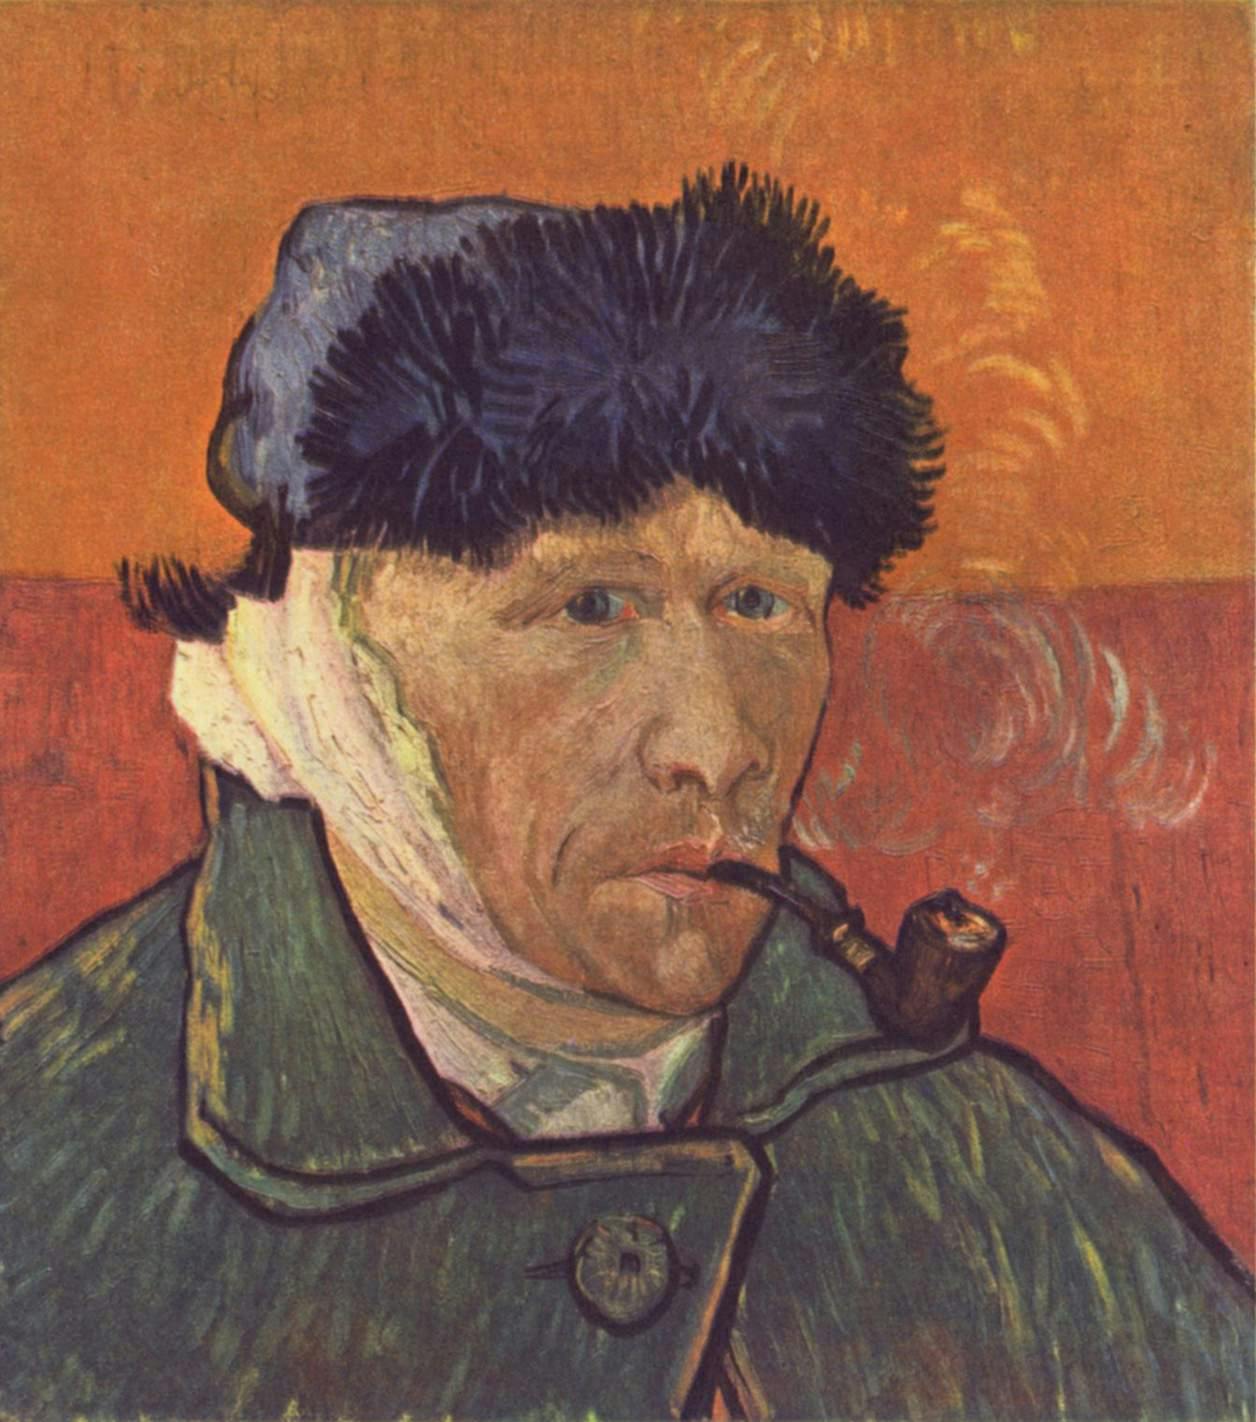 Episode #2: Was Van Gogh Accidentally Murdered? (Season 1, Episode 2)